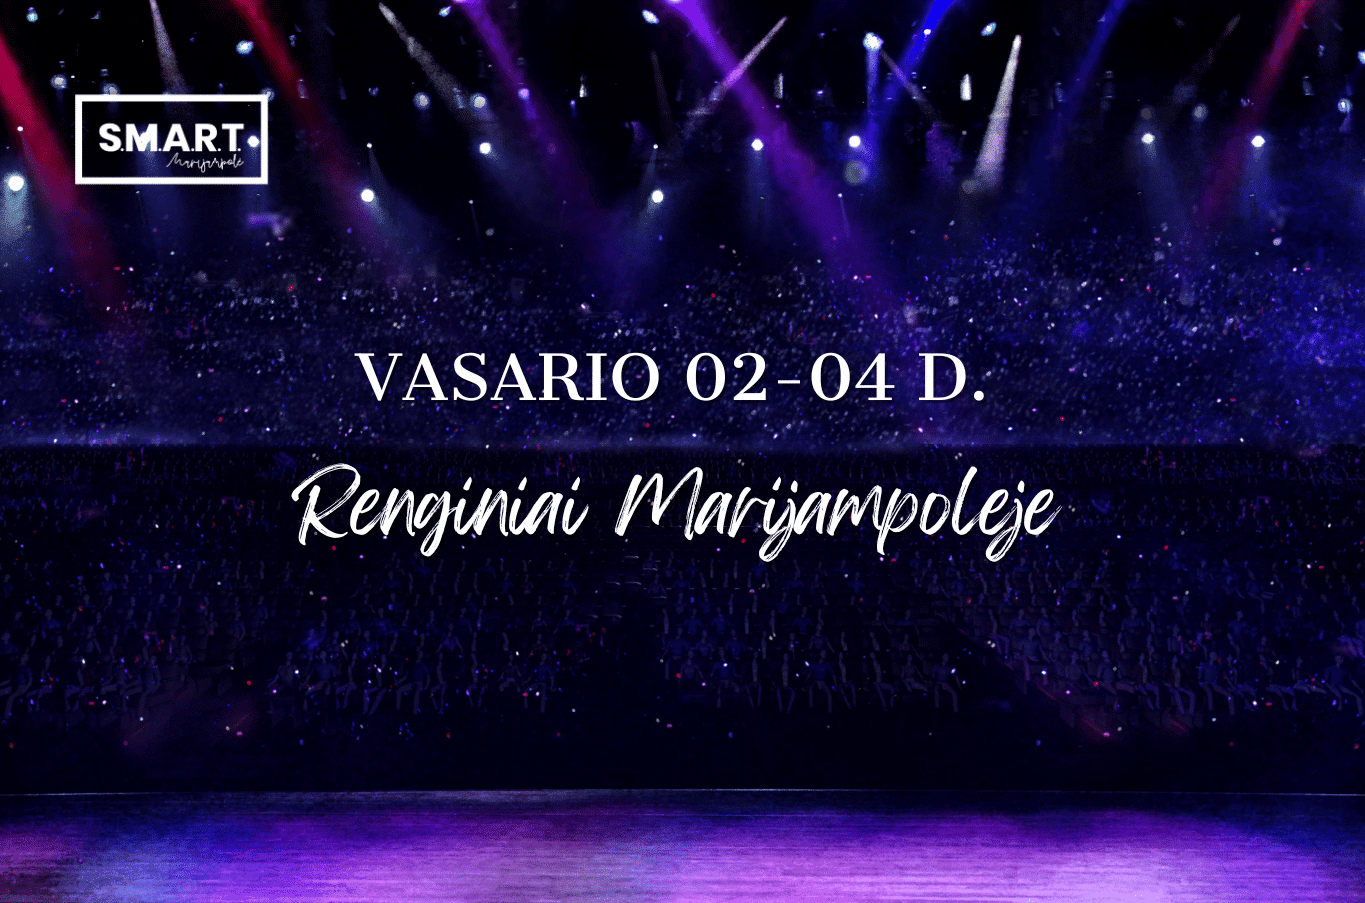 You are currently viewing Savaitgalio renginiai Marijampolėje | 02.02-02.04